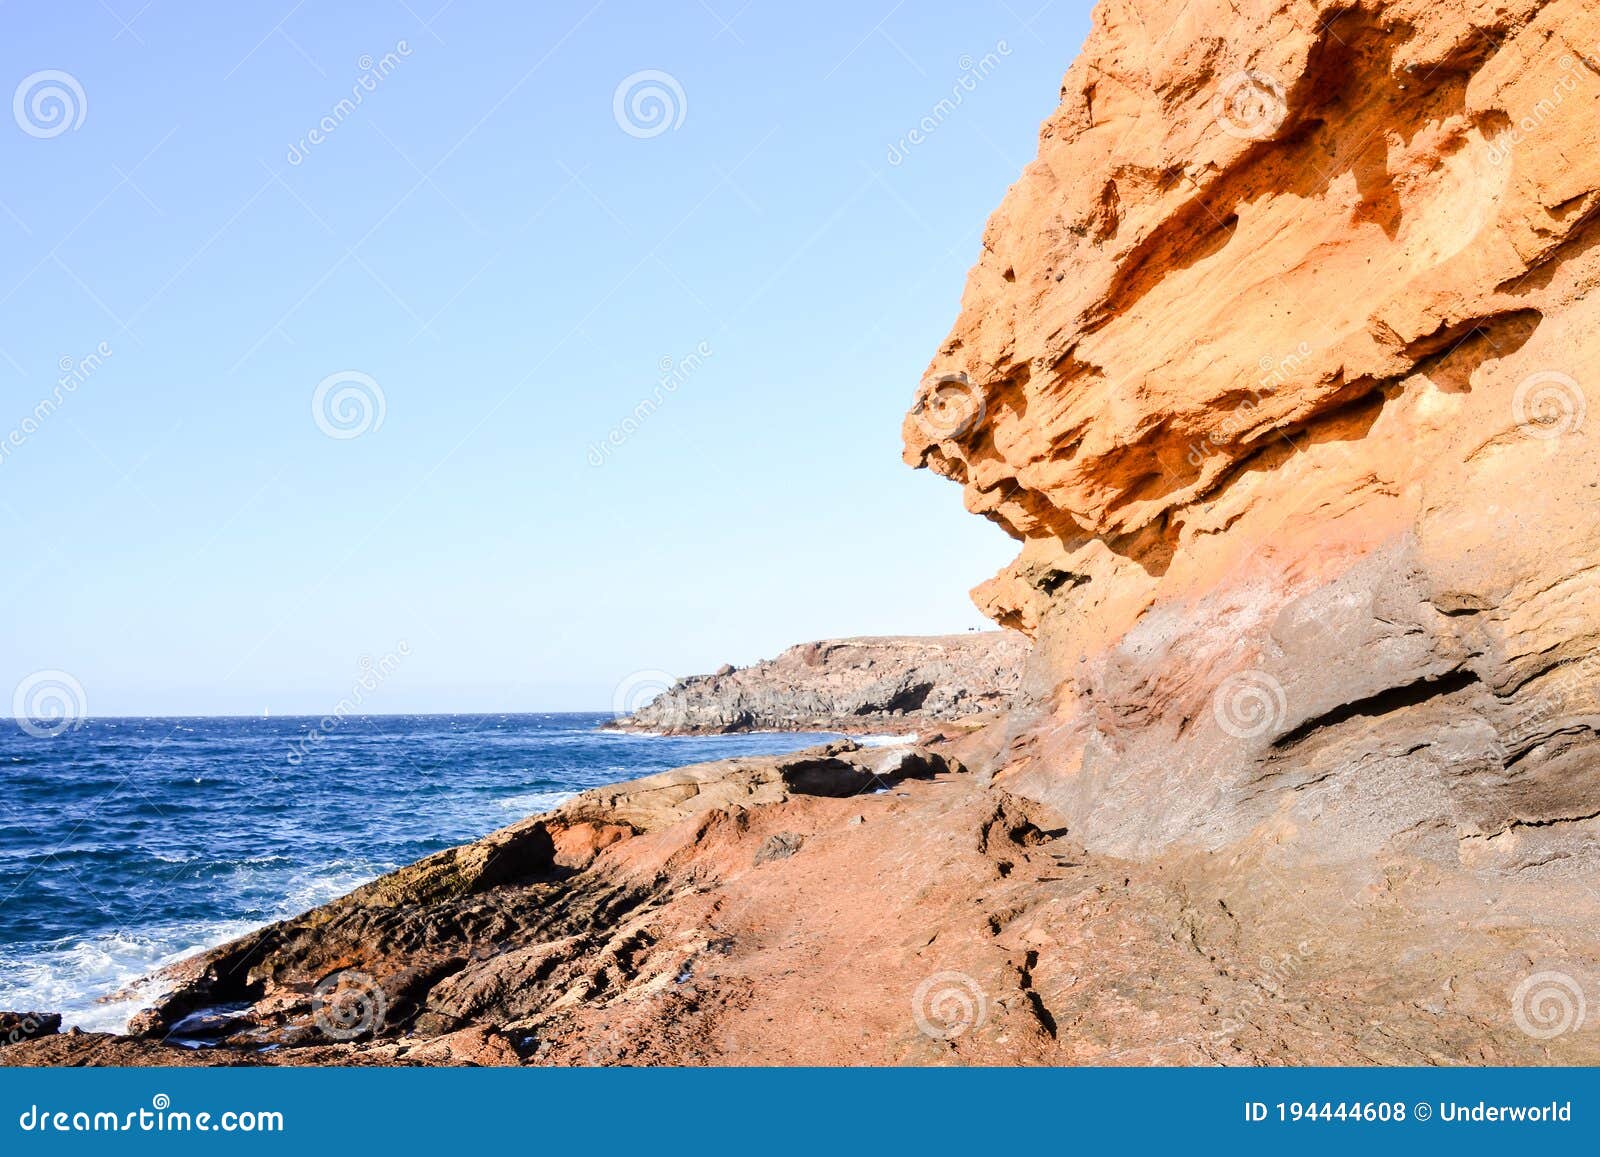 ocean coast's view montana amarilla tenerife